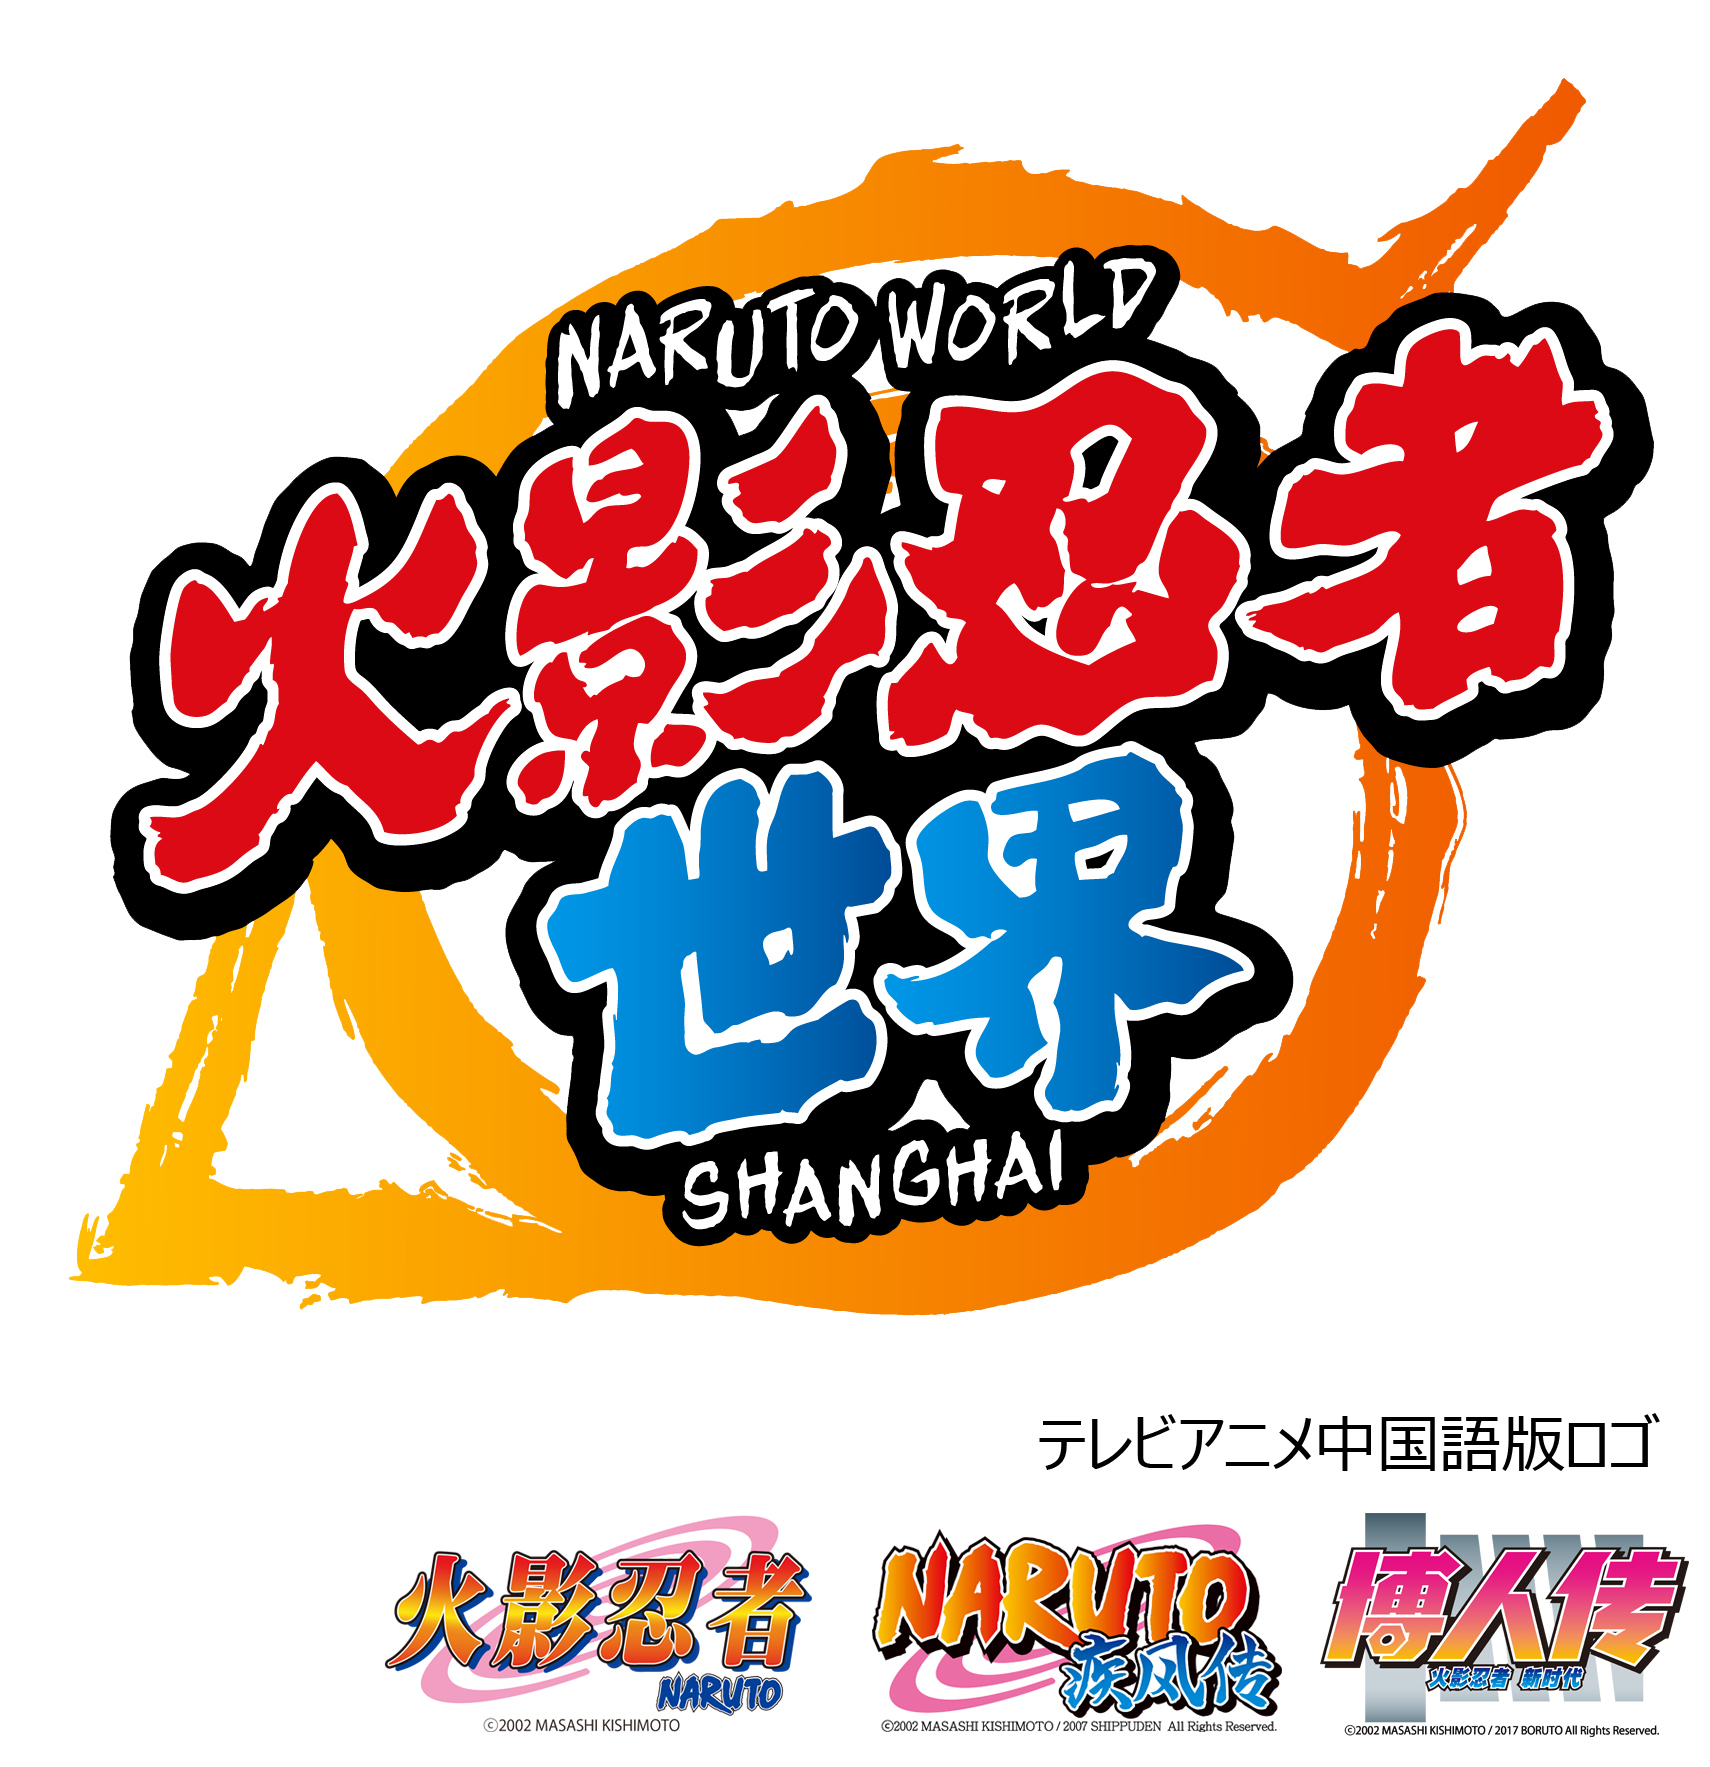 Naruto ナルト のキャラクターテーマパーク Naruto World が中国 上海にオープン Spice エンタメ特化型情報メディア スパイス